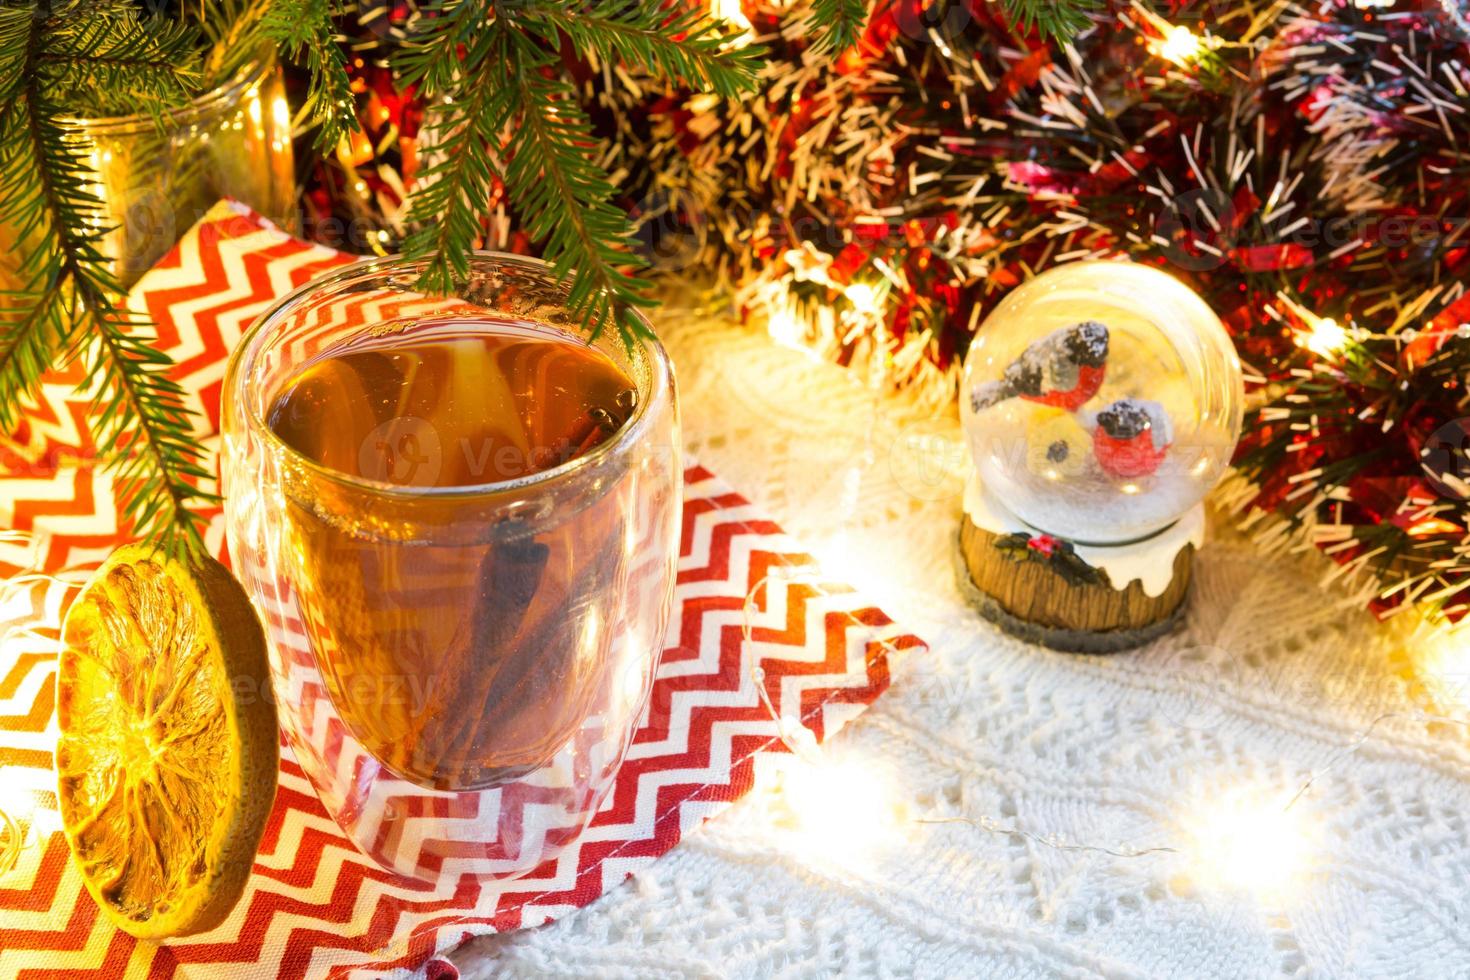 vaso transparente de vidrio de doble pared con té caliente y palitos de canela en la mesa con decoración navideña. ambiente de año nuevo, rodaja de naranja seca, guirnalda y oropel, globo de nieve con camachuelos foto